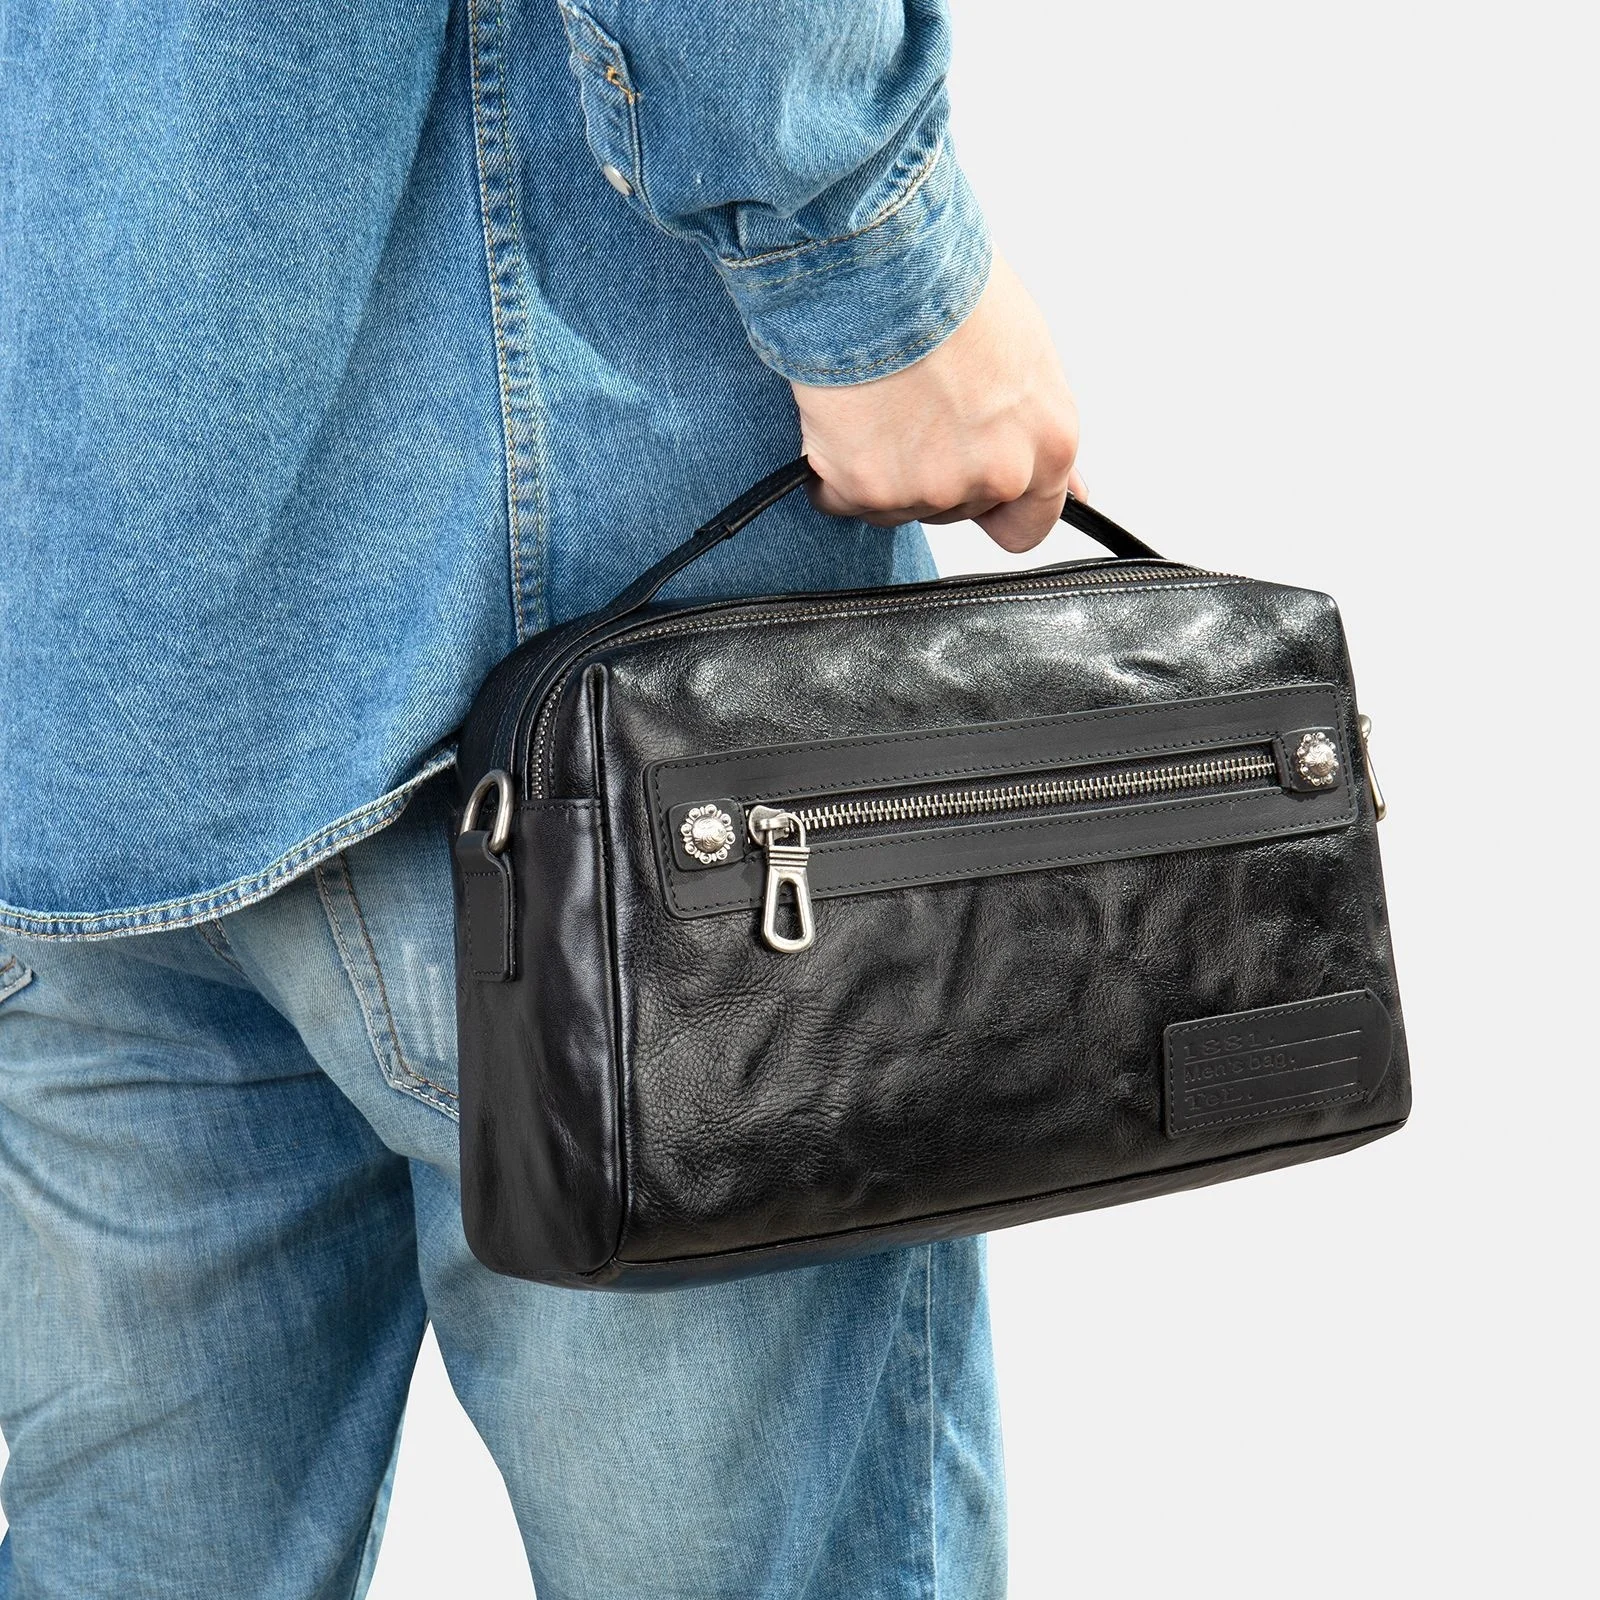 Business Men Shoulder Handbag Leather Crossbody Bags For Men Handbags Pocket Man Shoulder Bag Genuine Leather Bag Messenger Bag